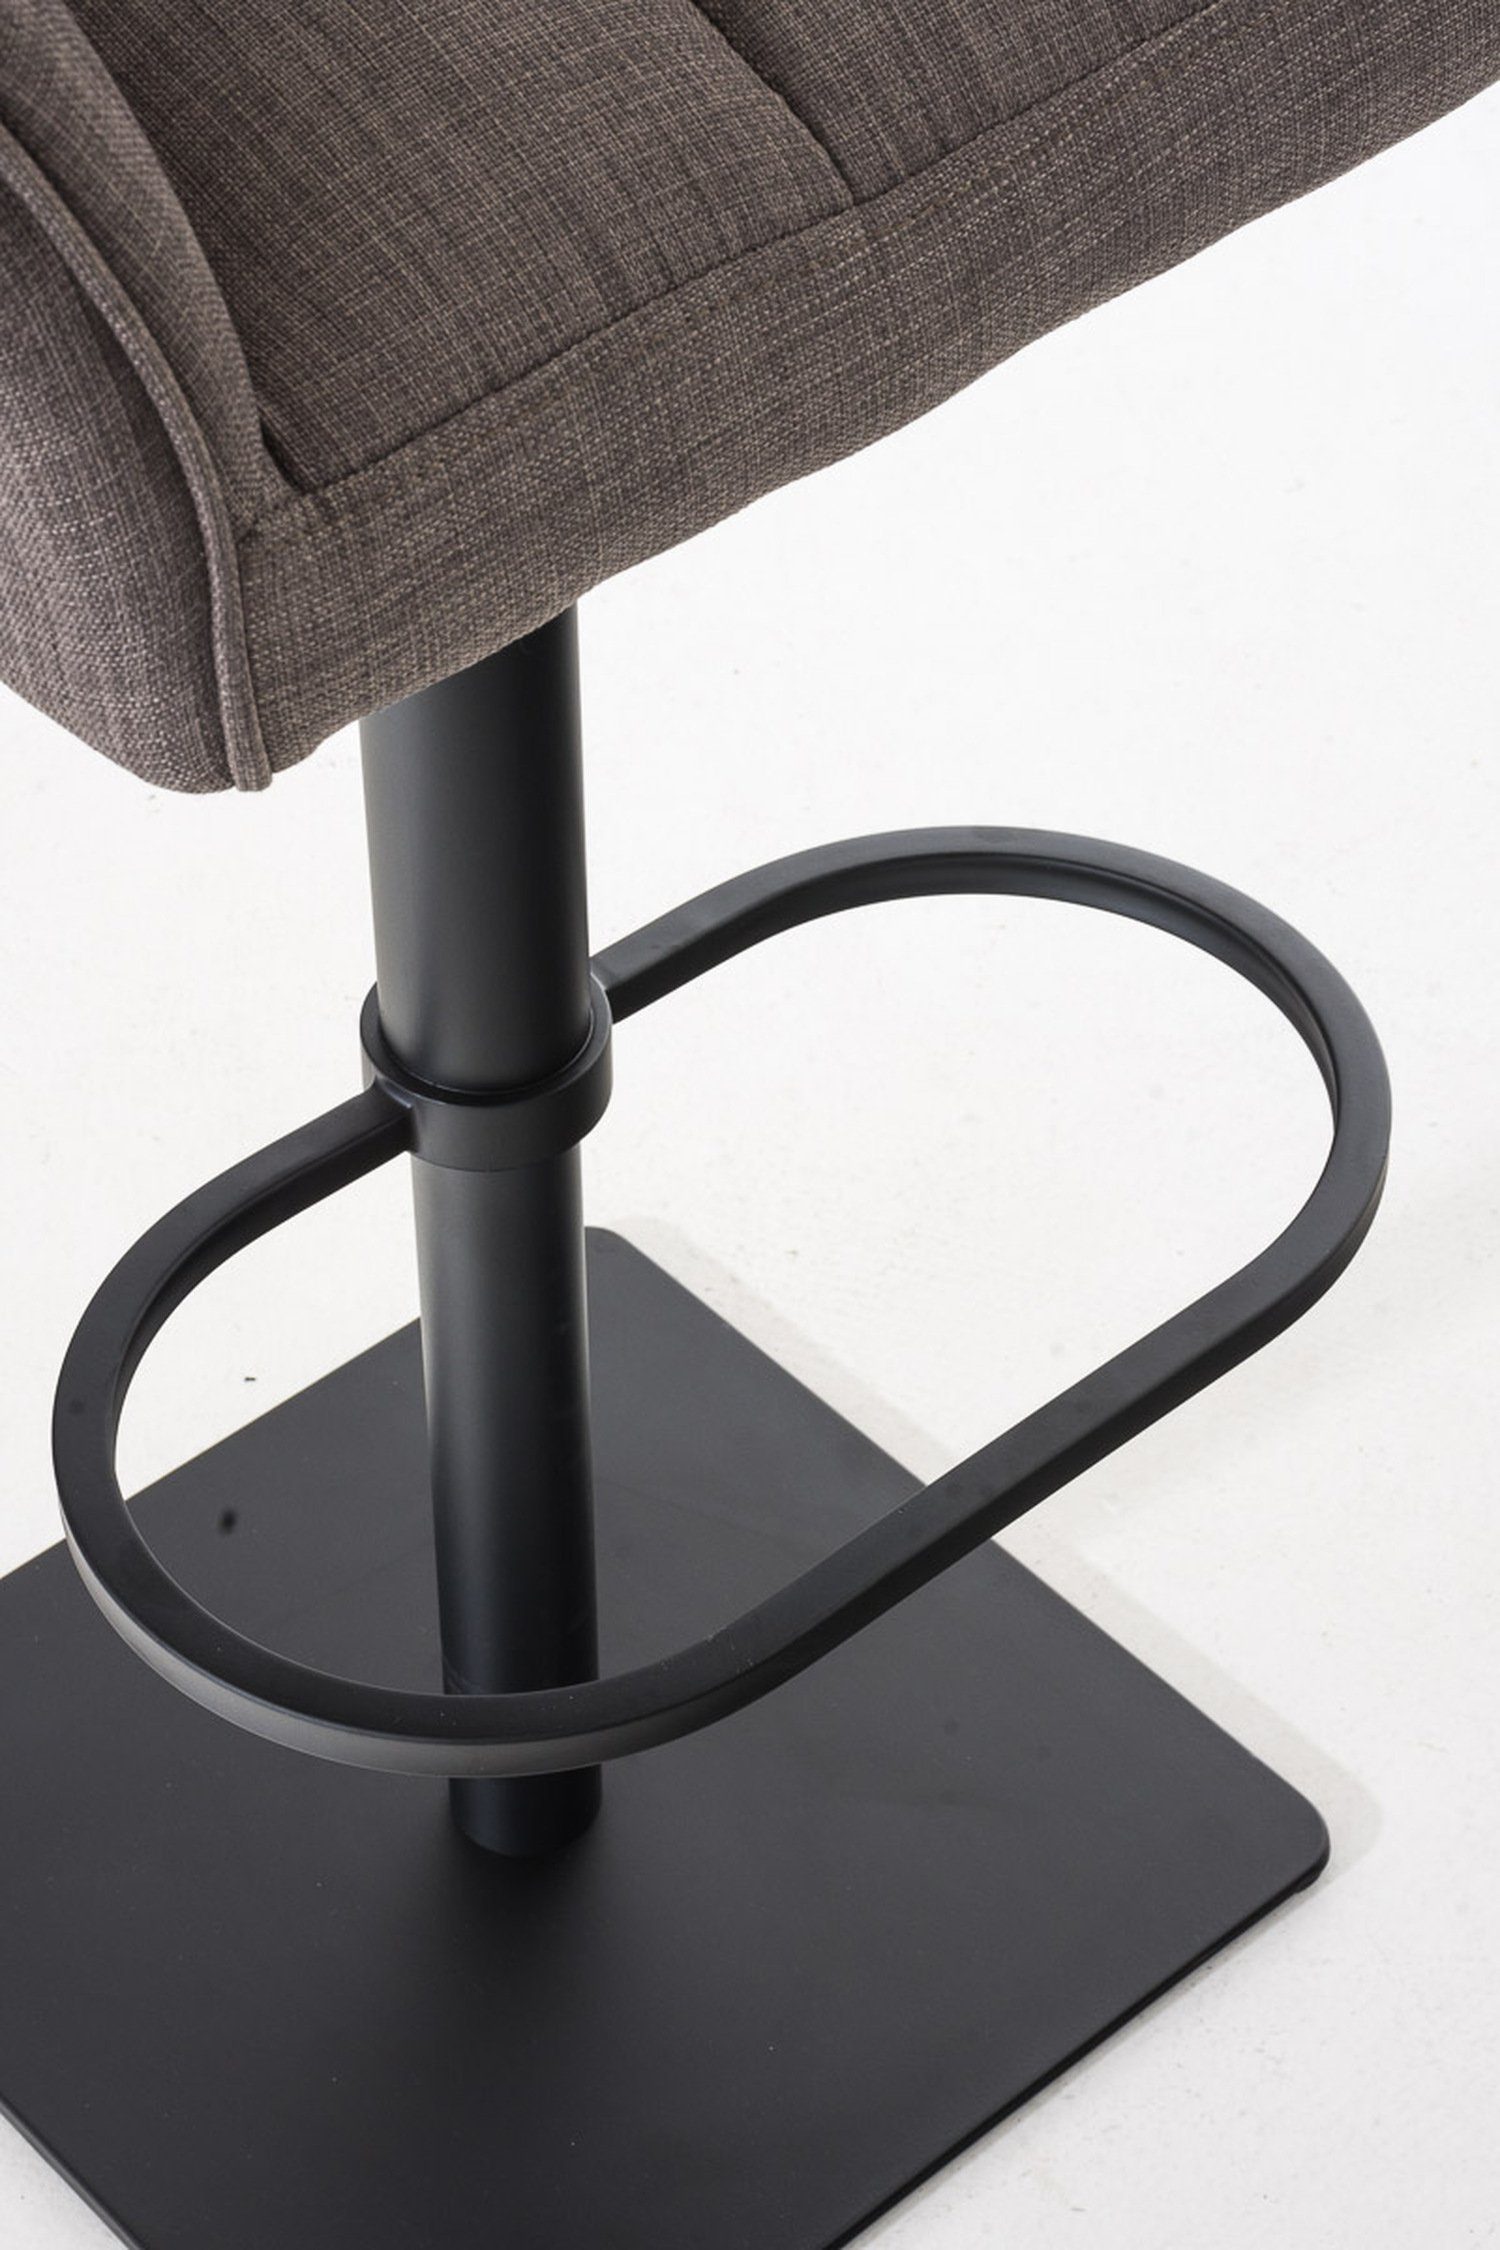 für - drehbar Stoff Sitzfläche: Grau TPFLiving matt Rückenlehne - schwarz & Küche), Hocker Theke Fußstütze Metall Barhocker Damaso - und 360° (mit